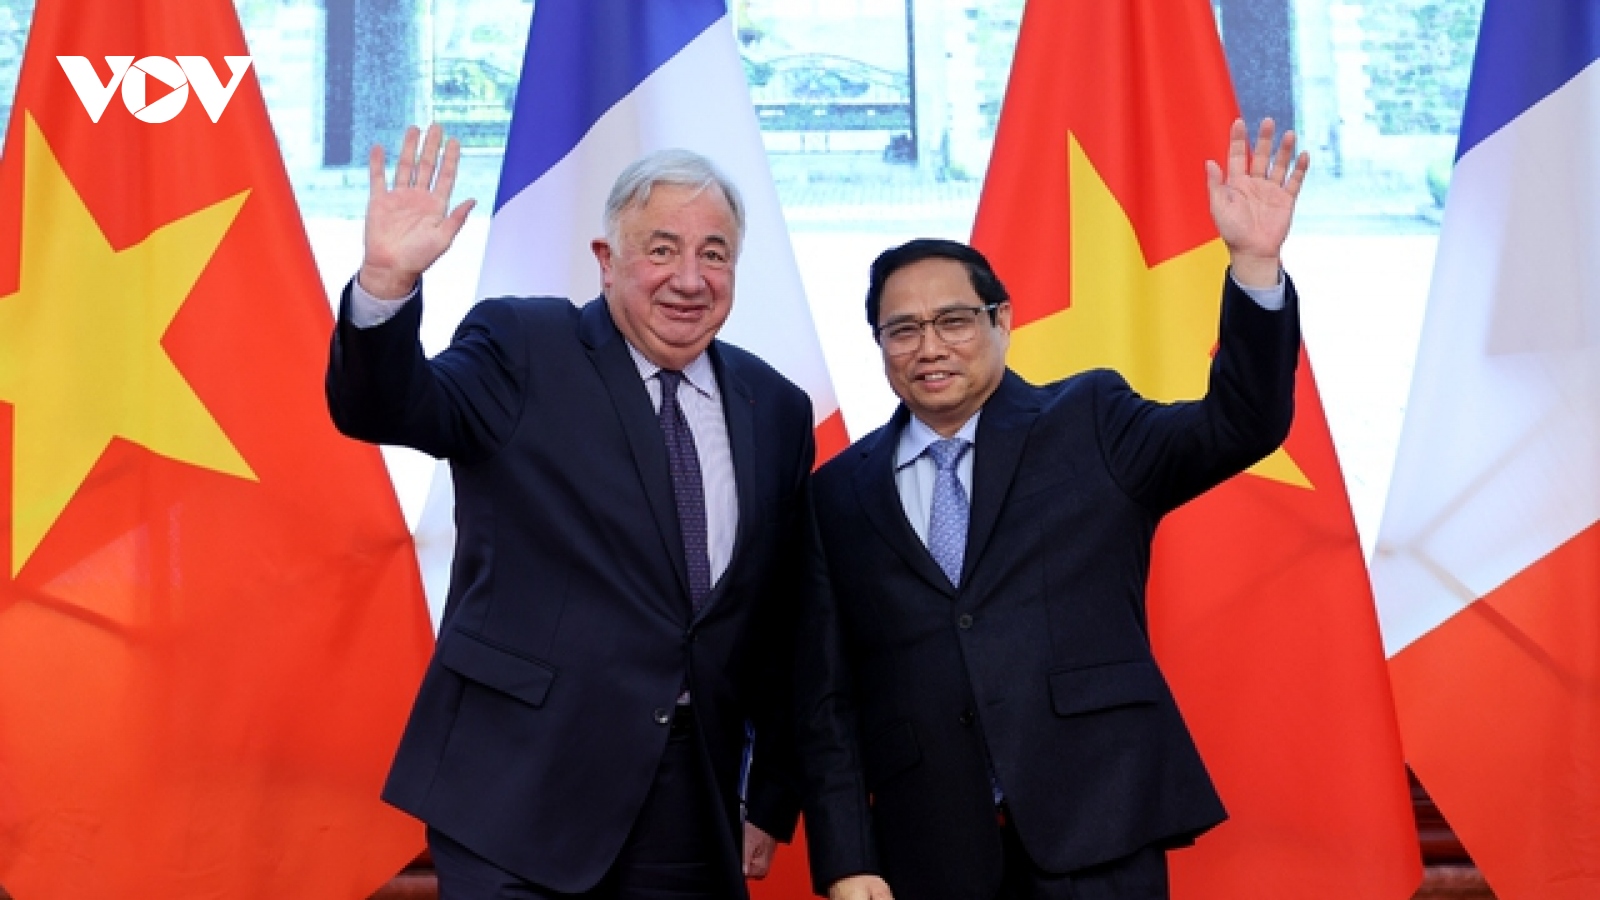 Đưa quan hệ hợp tác Việt-Pháp ngày càng đi vào chiều sâu, thiết thực và hiệu quả